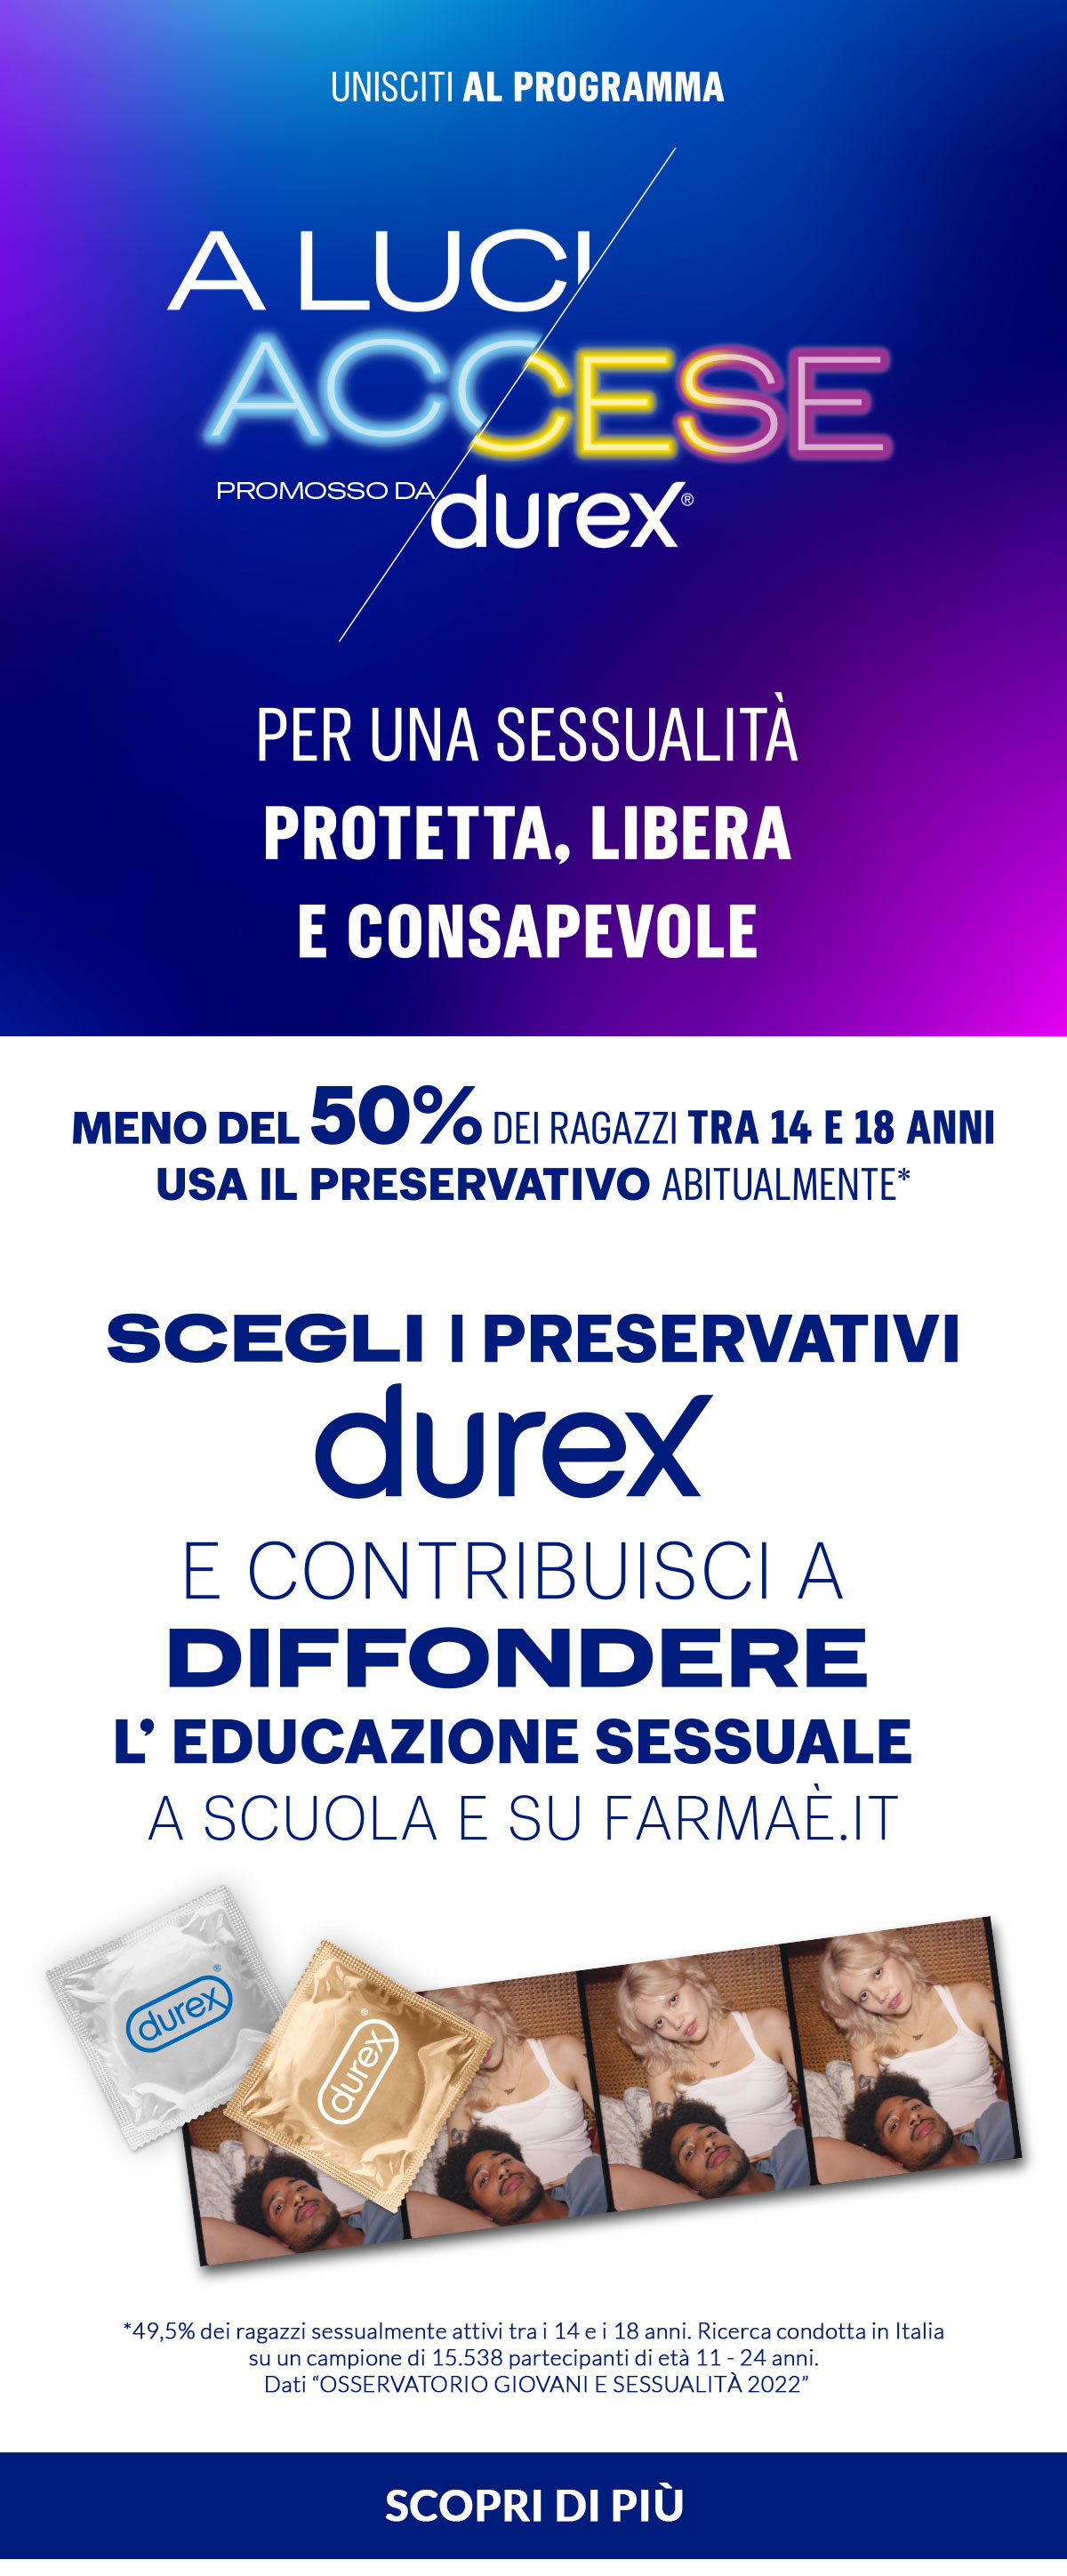 A Luci Accese. Promosso da Durex. Per una sessualità protetta, libera e consapevole